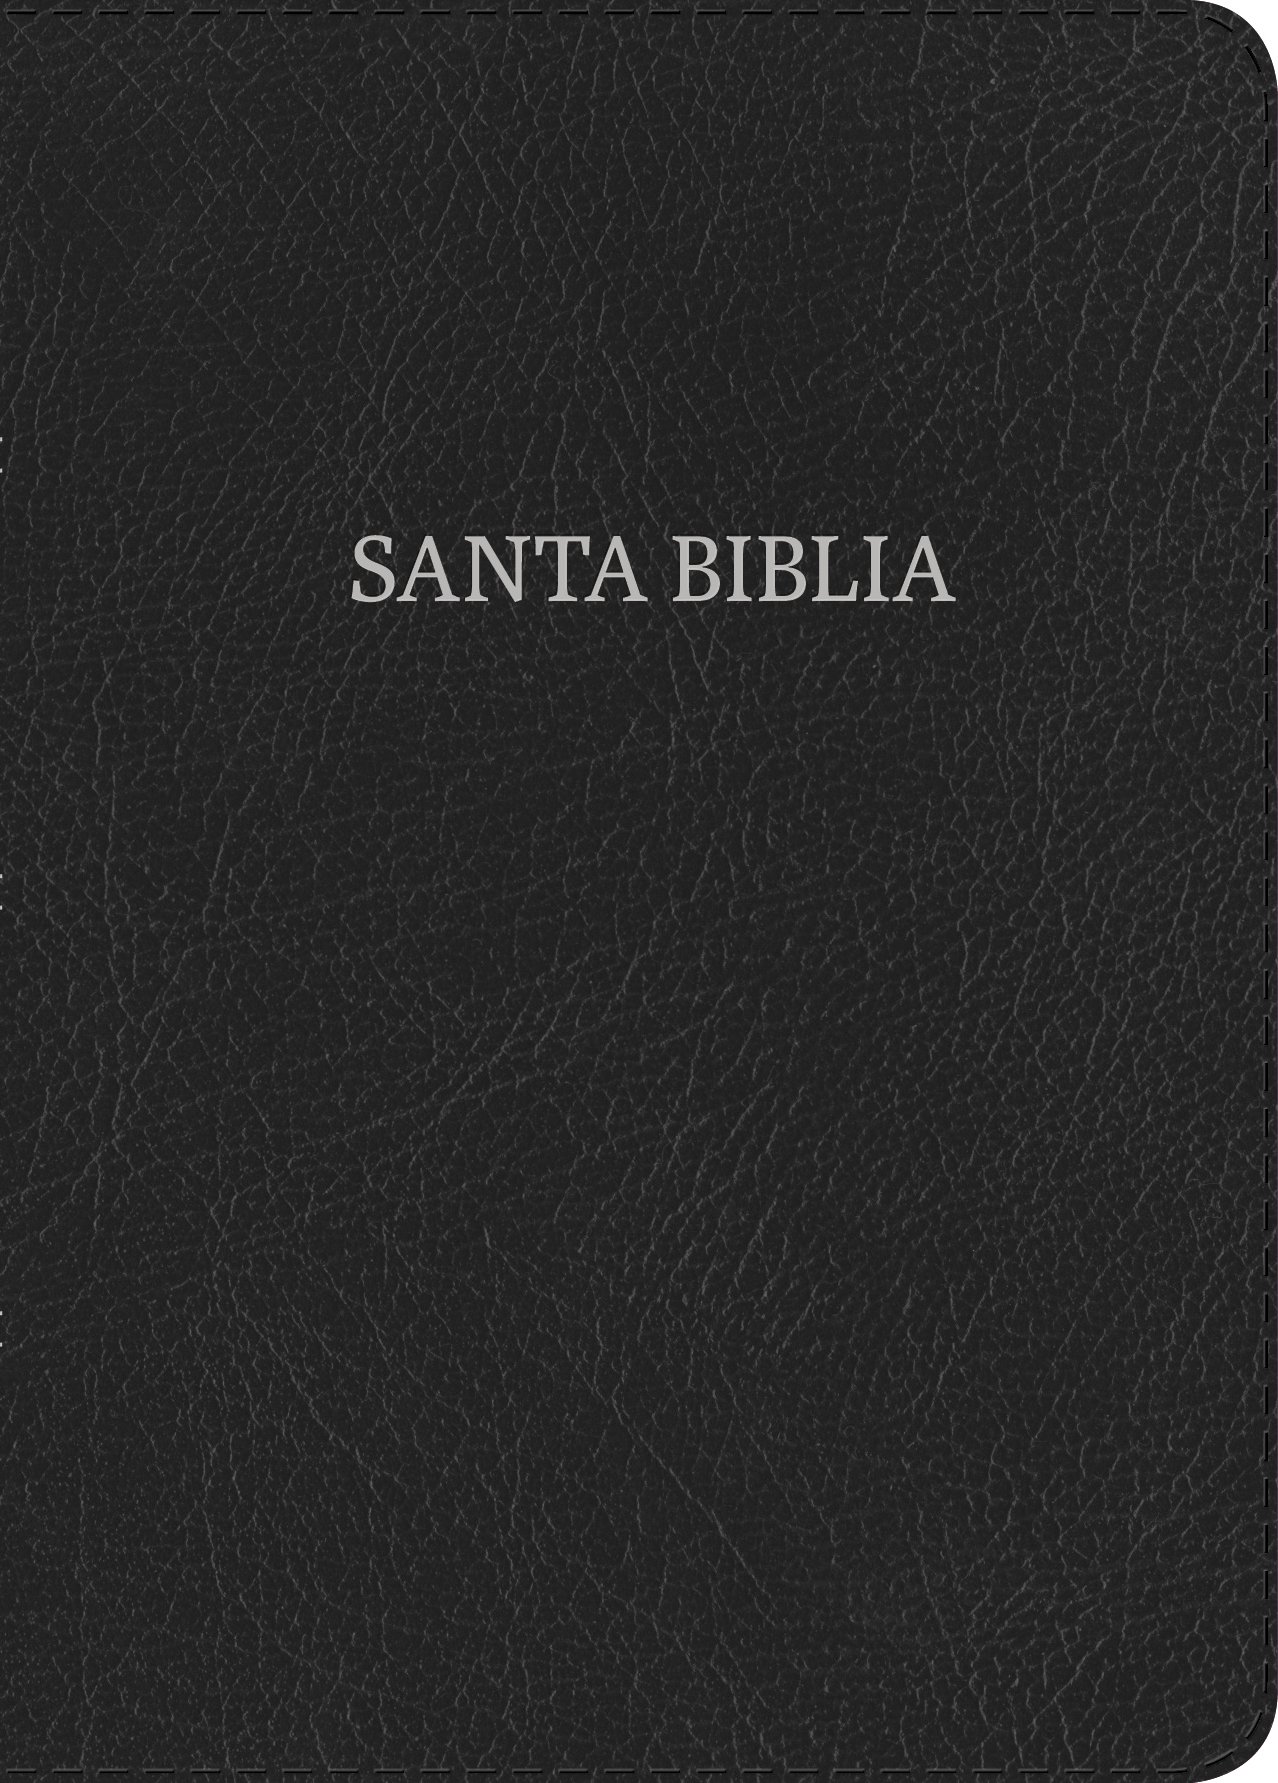 Biblia Nueva Versión Internacional Letra Súper Gigante negro, piel fabricada / NVI Super Giant Print Bible, Black, Bonded Leather (Spanish Edition)